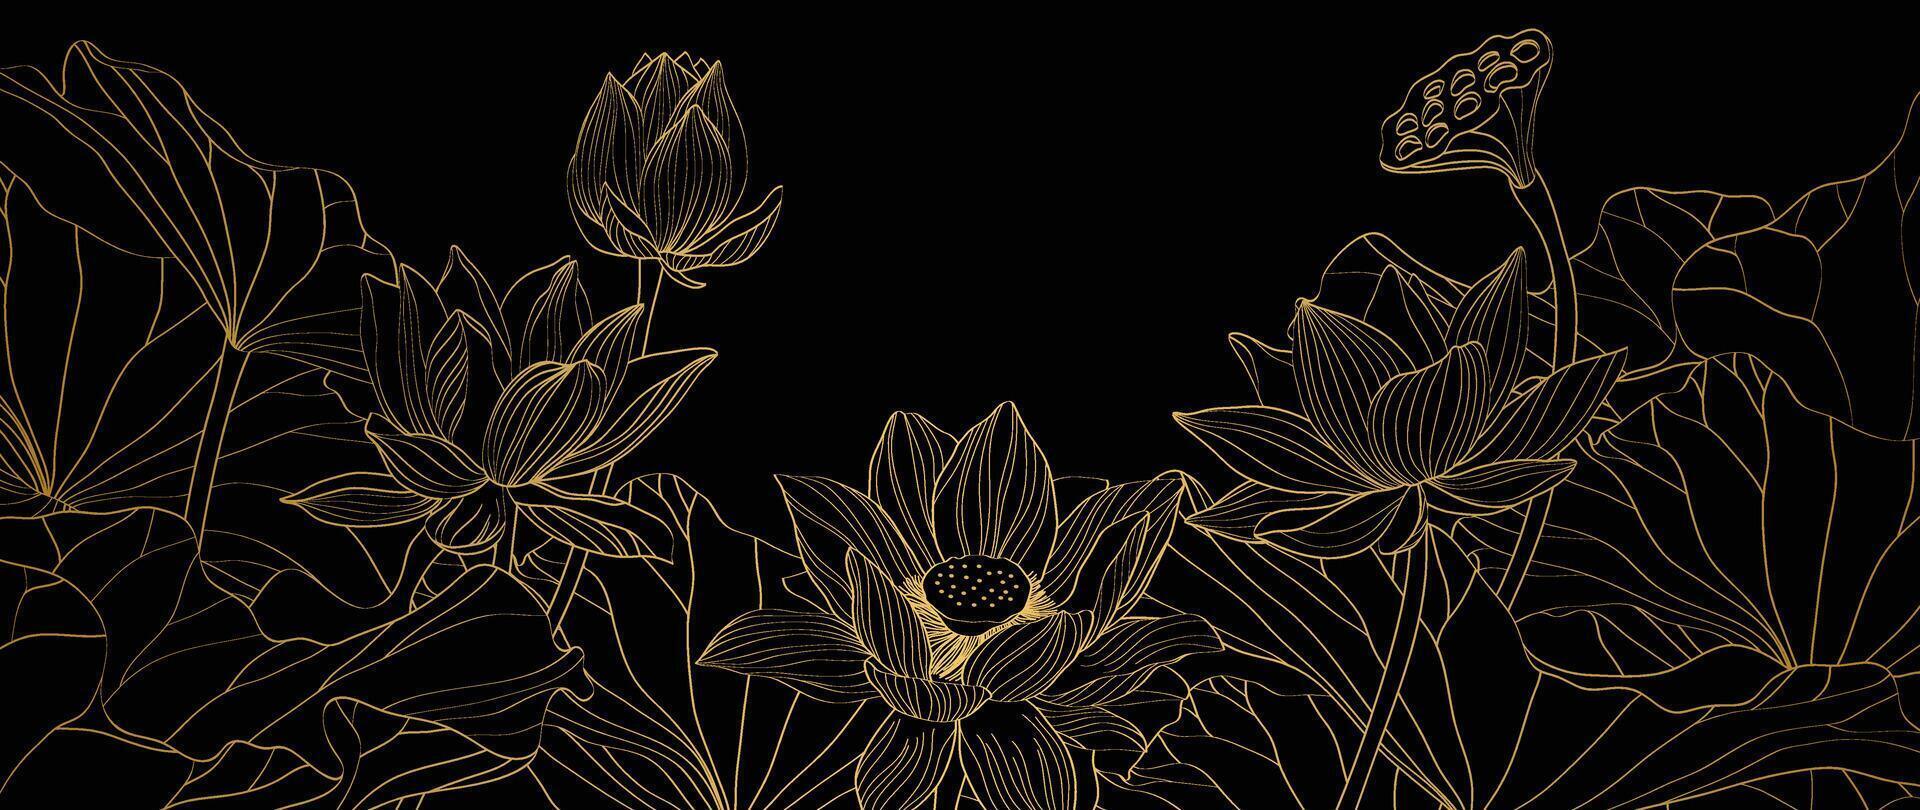 Luxus Lotus Blume Hintergrund . elegant Gold Lotus Blume, Blatt Linie Kunst auf schwarz Hintergrund. japanisch und Chinesisch Illustration Design zum Dekor, Hintergrund, Banner, Verpackung. vektor